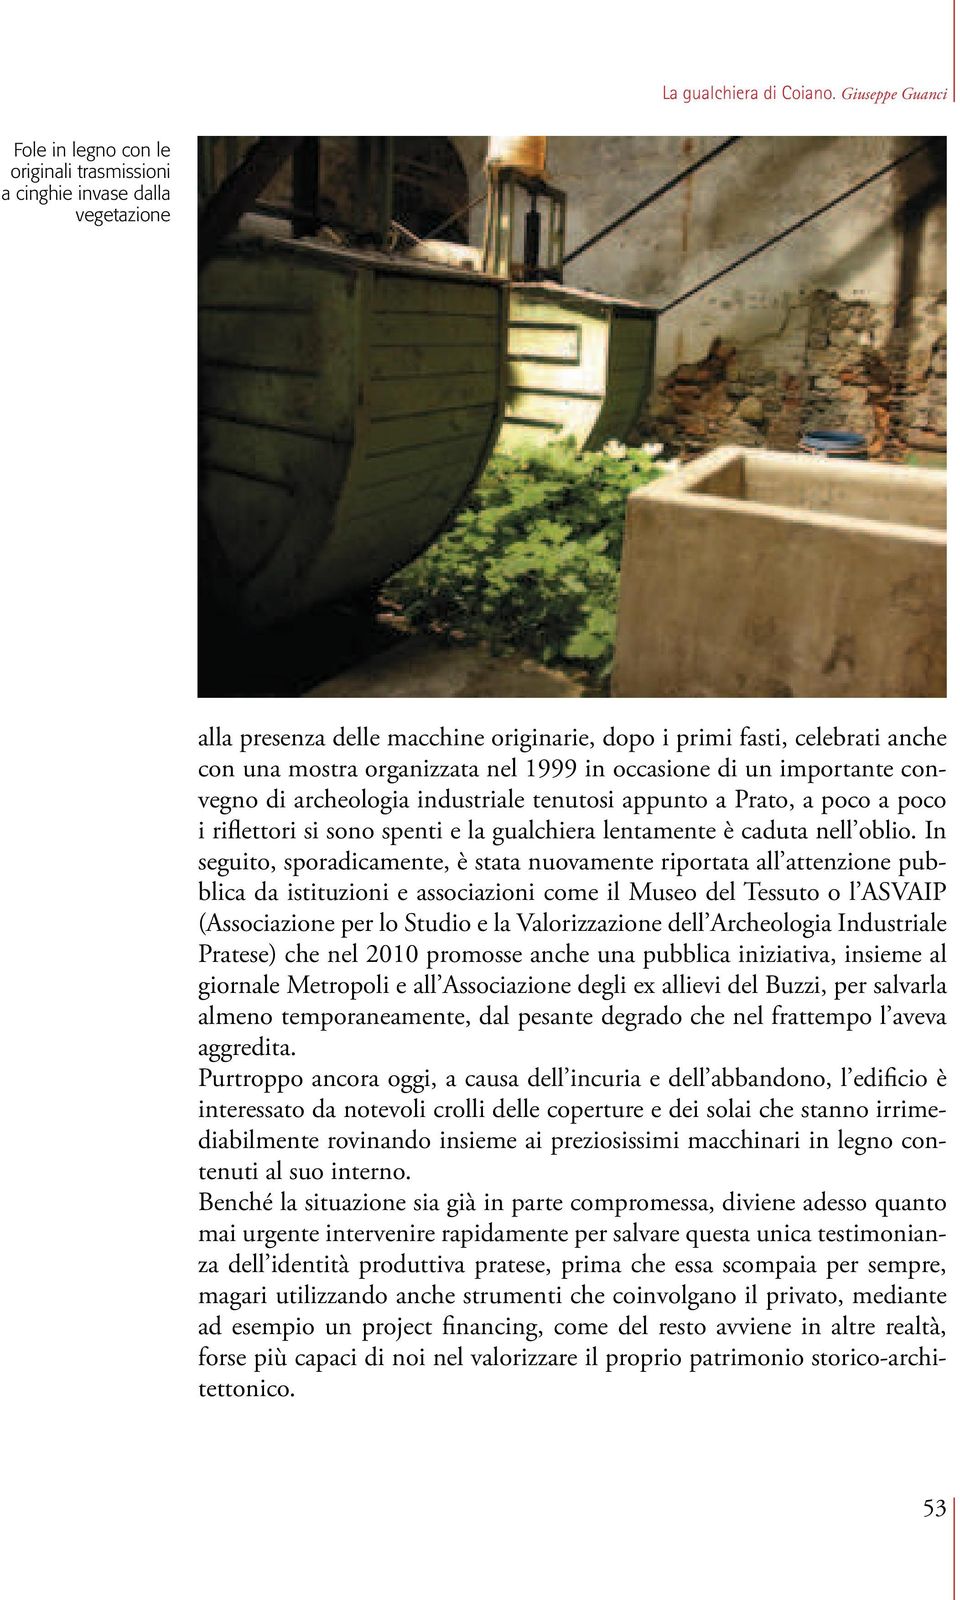 nel 1999 in occasione di un importante convegno di archeologia industriale tenutosi appunto a Prato, a poco a poco i riflettori si sono spenti e la gualchiera lentamente è caduta nell oblio.